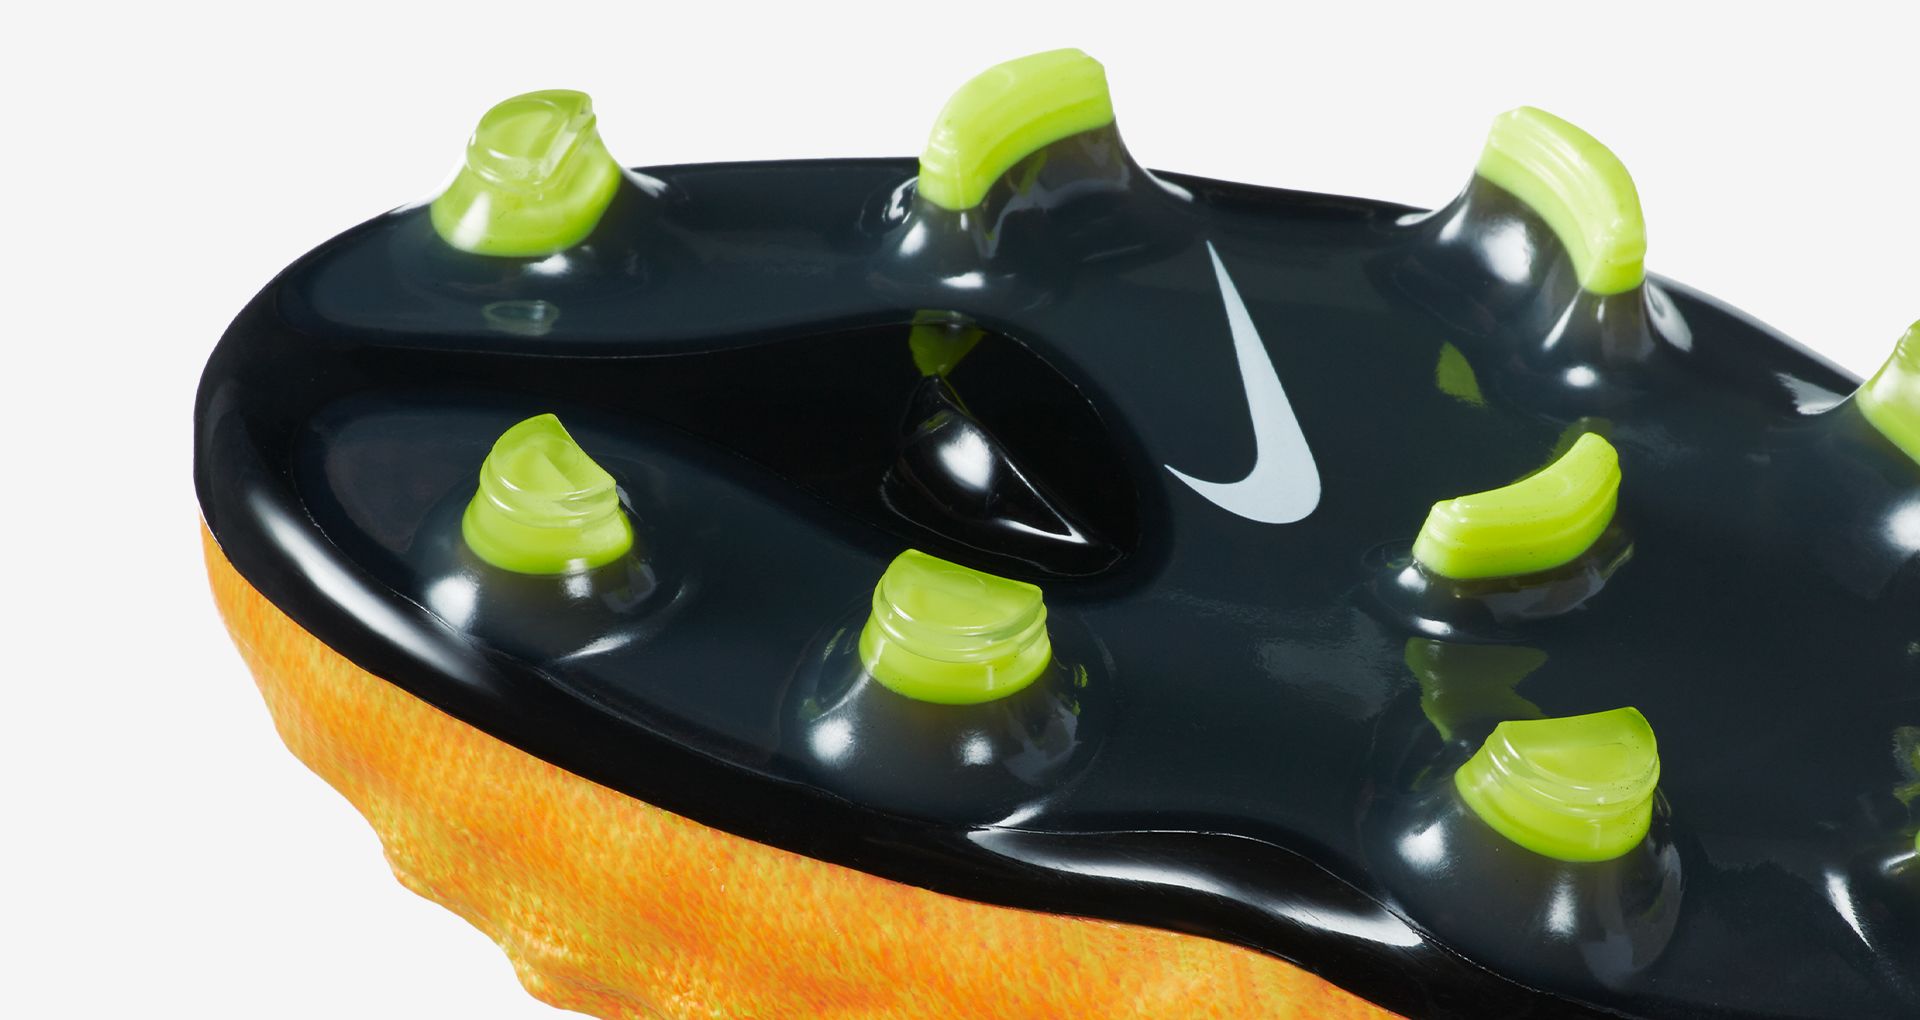 Nike Magista Obra BHM Football Boots